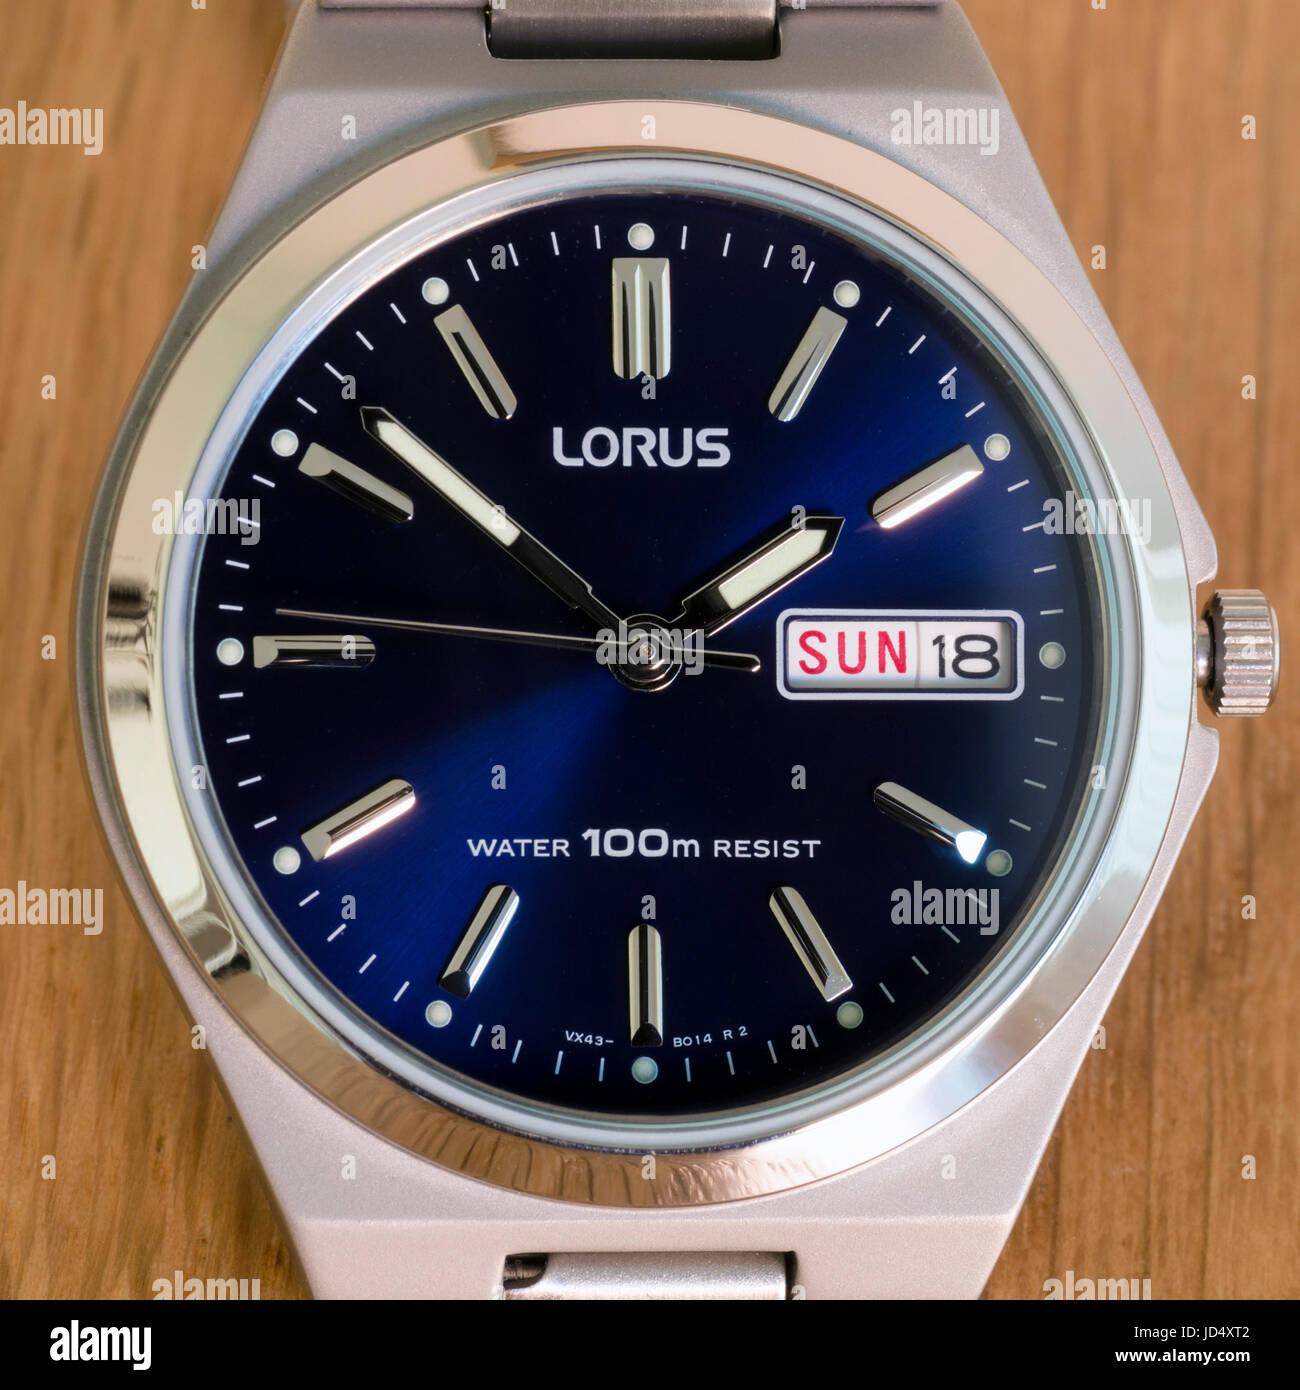 Uomini Lorus orologio analogico, guarda con profondo blu del volto, giorno e data display e cassa in acciaio inossidabile su una superficie di legno. Foto Stock